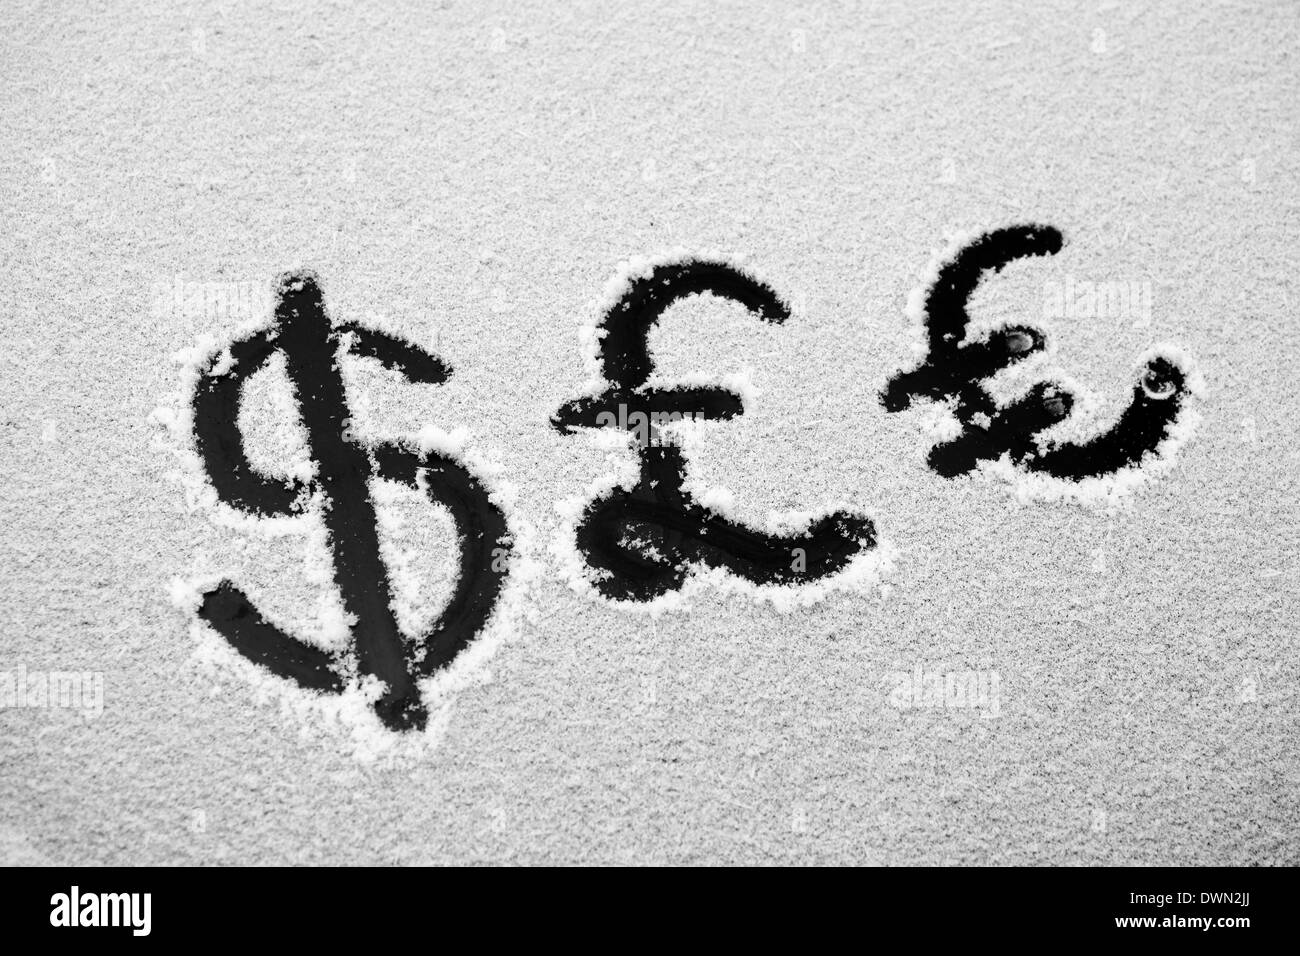 Imagen de un signo del dólar y el euro dibujado en la nieve Foto de stock